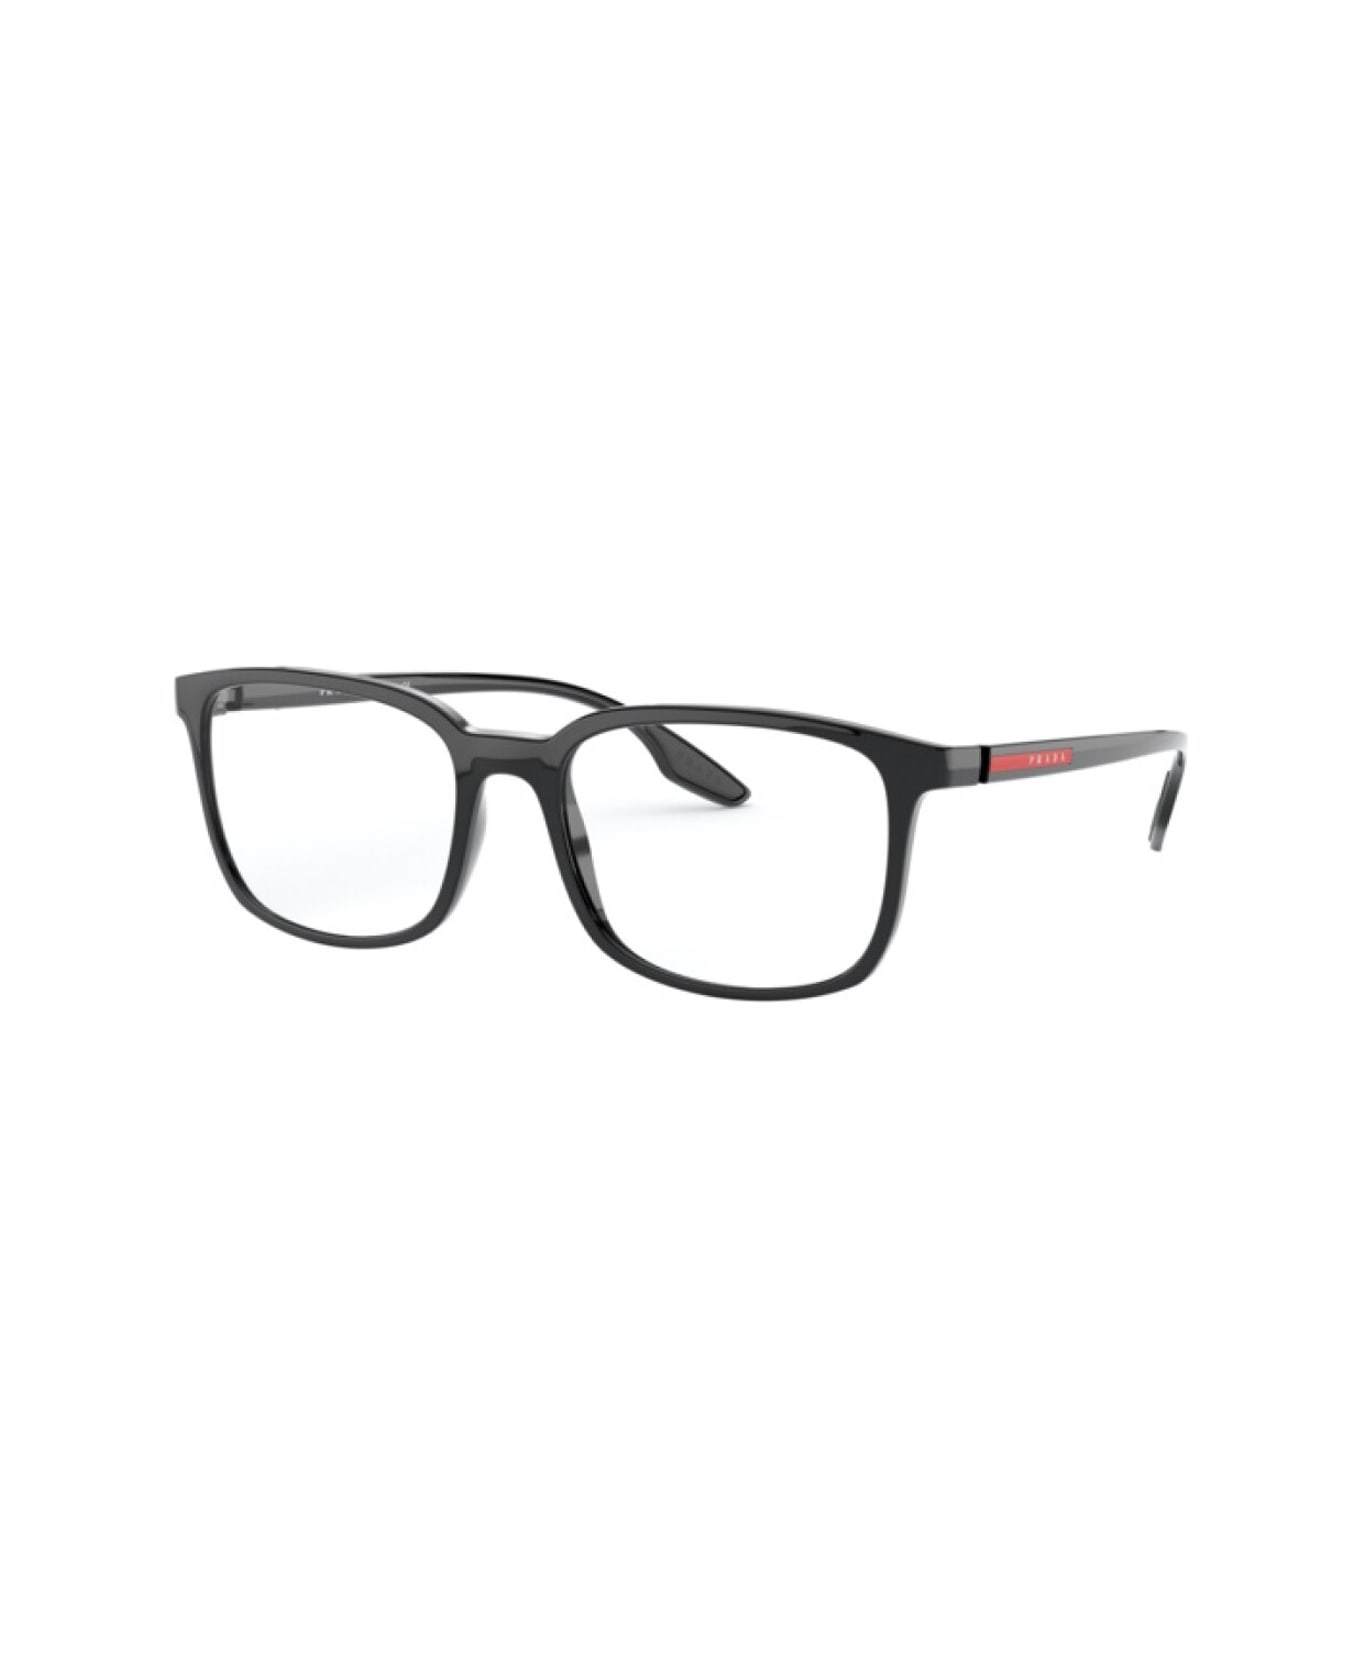 Prada Eyewear Pr 05mv Glasses - Nero